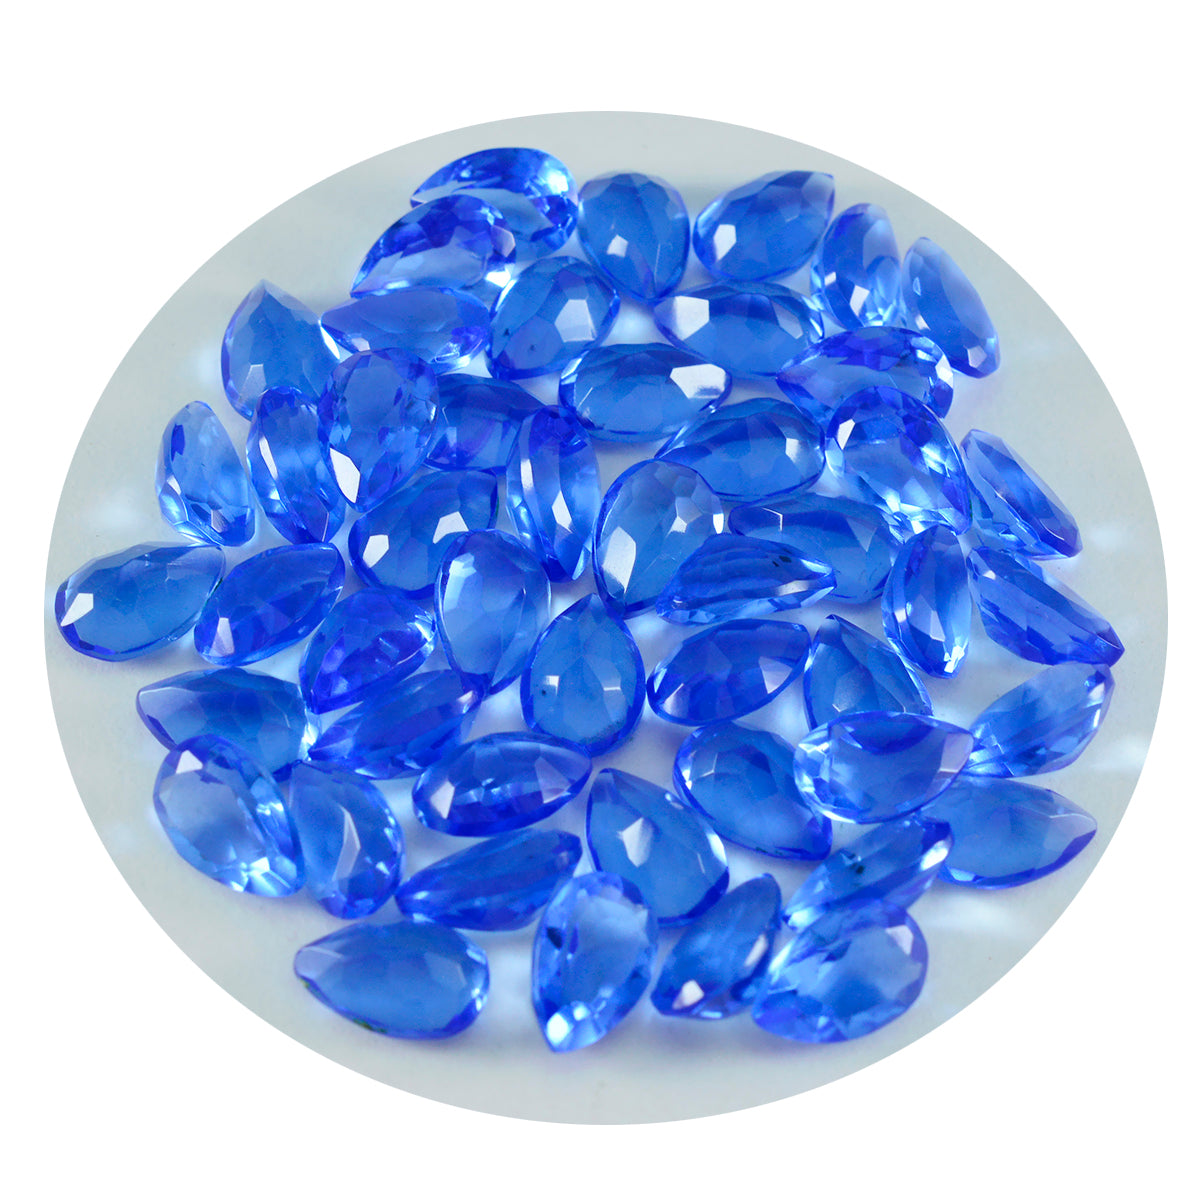 riyogems 1 шт. синий сапфир cz ограненный 4x6 мм грушевидной формы красивый качественный драгоценный камень